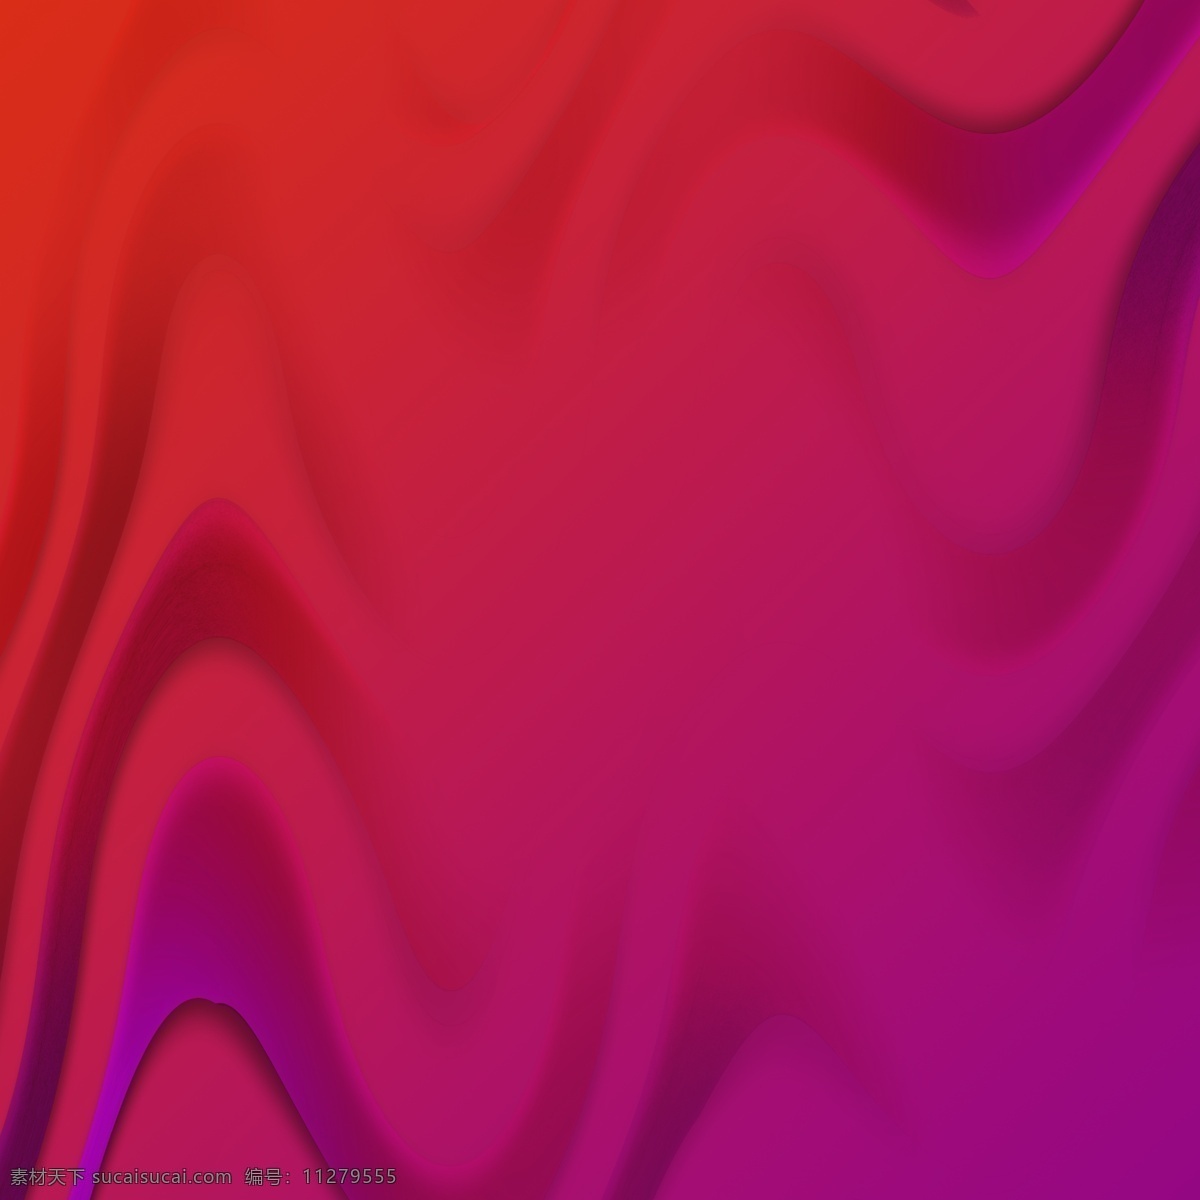 渐变红紫波浪 渐变 彩色 红色 波浪 底纹 背景 材质